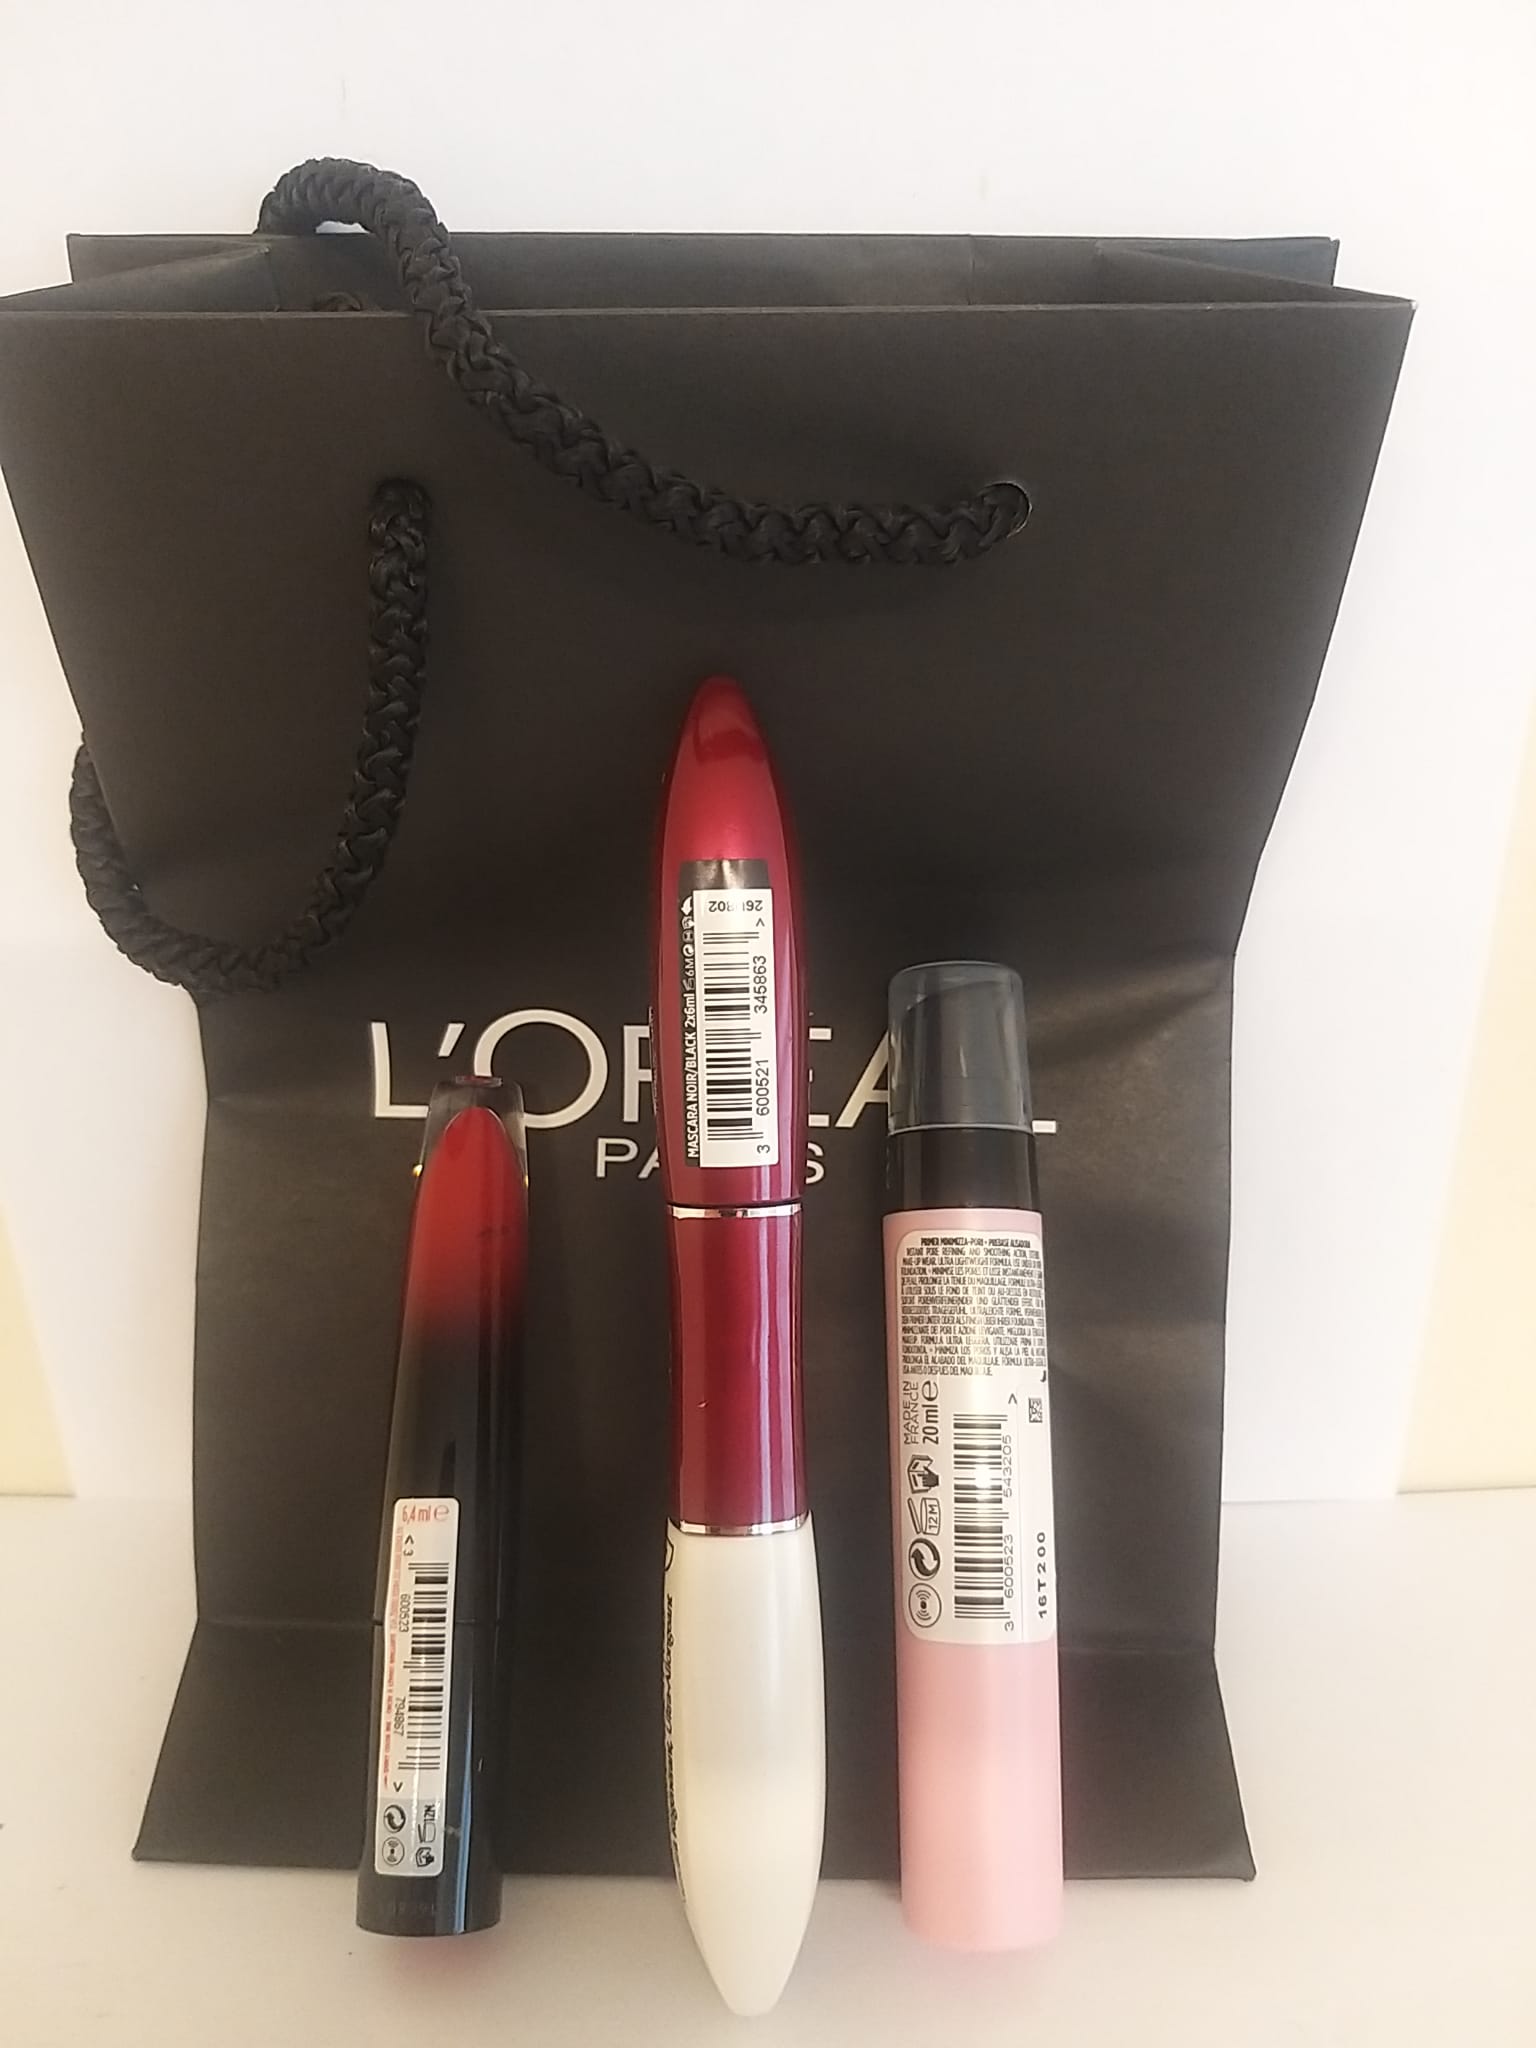 L'Oreal Q1 Boots 2022 Makeup Gift Bag